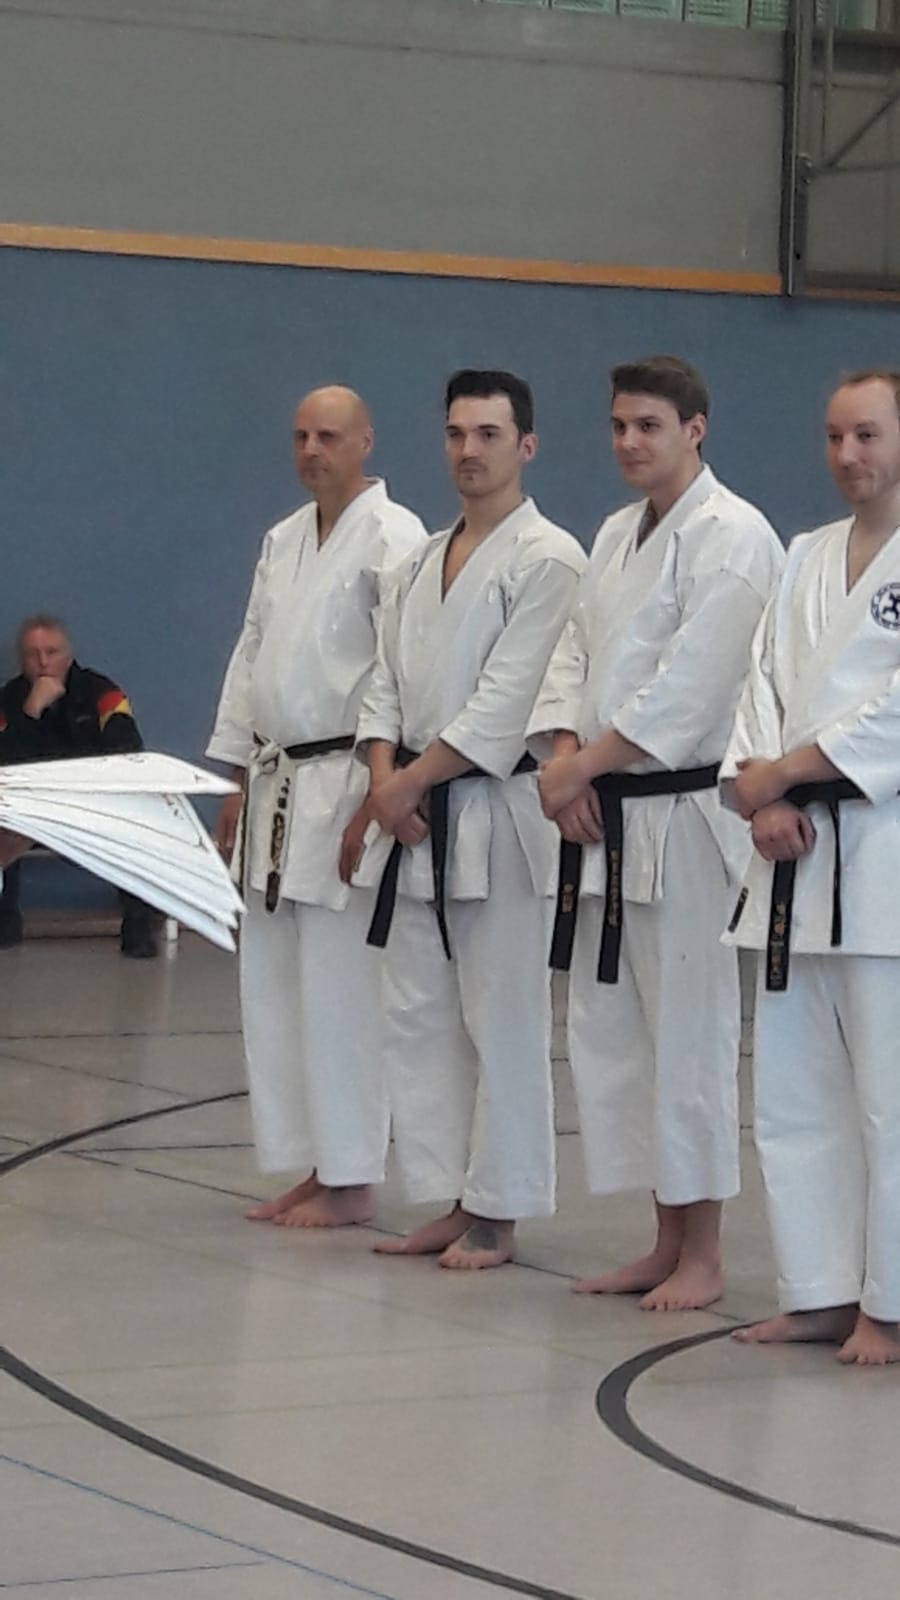 Karate Dan Prüfung von René Roese in Waltrop am 11.November 2019 mit Partner Thomas Skwarr